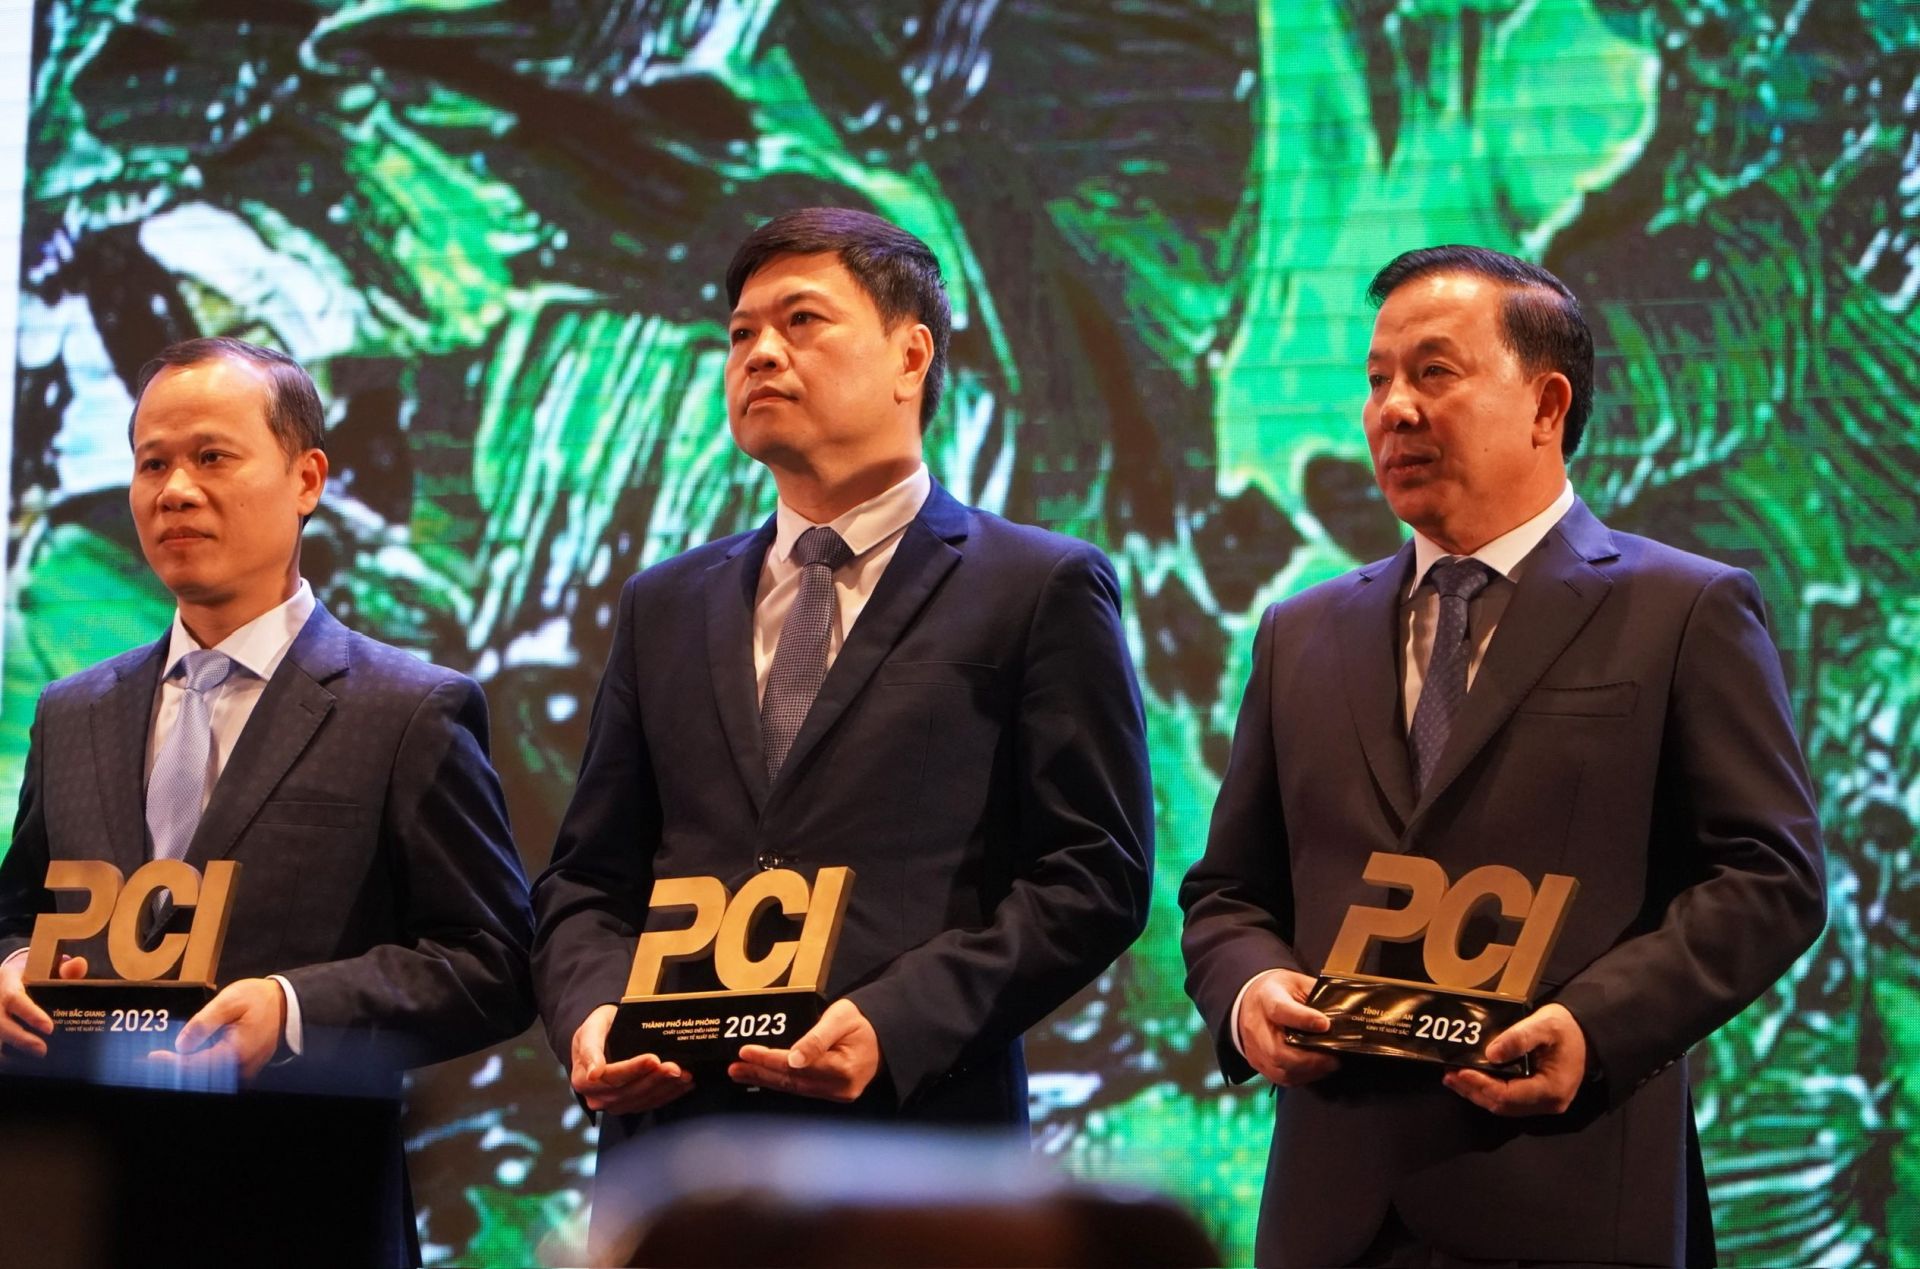 Chủ tịch UBND tỉnh Long An – Nguyễn Văn Út (bìa phải) nhận Cúp PCI 2023